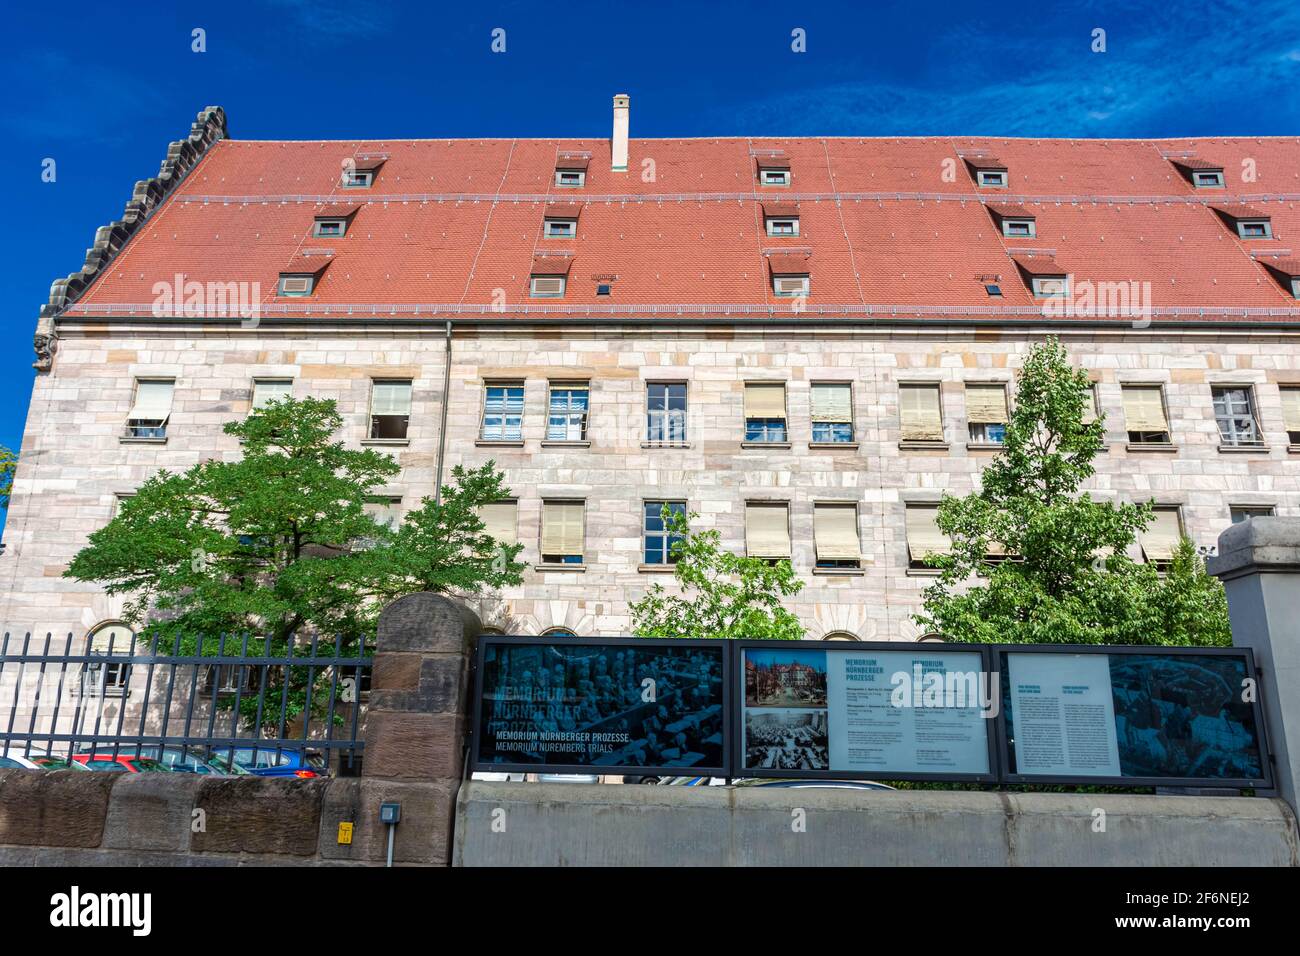 NÜRNBERG, 28. JULI 2020: Eingang zum Memorium Nurnberger Prozesse - die Gedenkstätte für die Nürnberger Prozesse in der Stadt Nürnberg, Deutschland. T Stockfoto